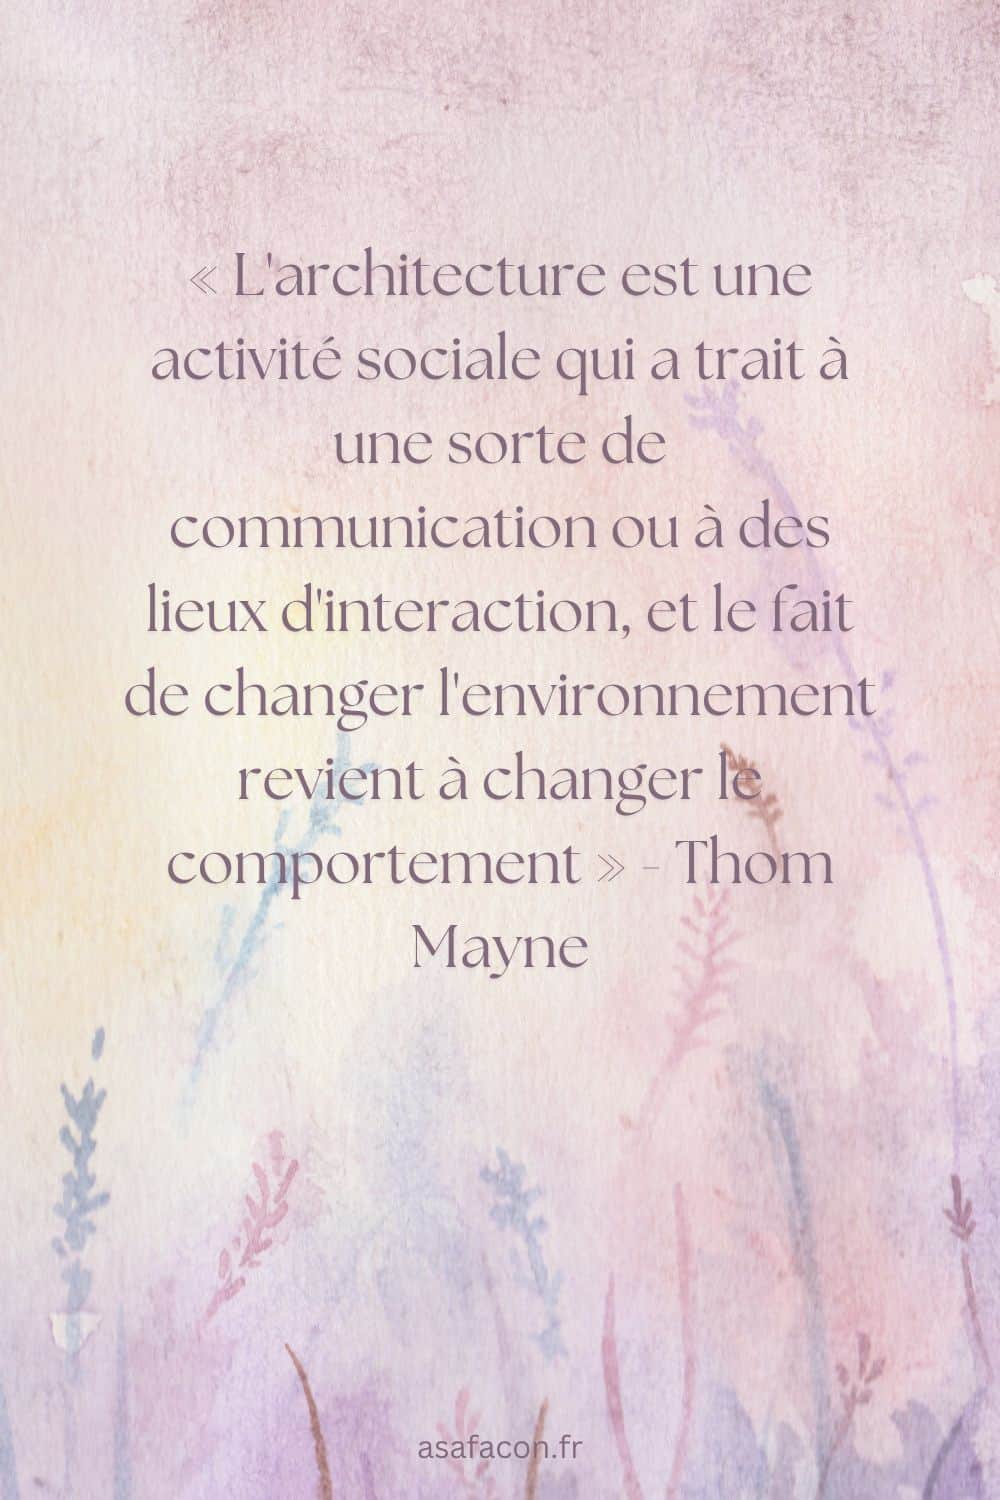 « L'architecture est une activité sociale qui a trait à une sorte de communication ou à des lieux d'interaction, et le fait de changer l'environnement revient à changer le comportement » - Thom Mayne